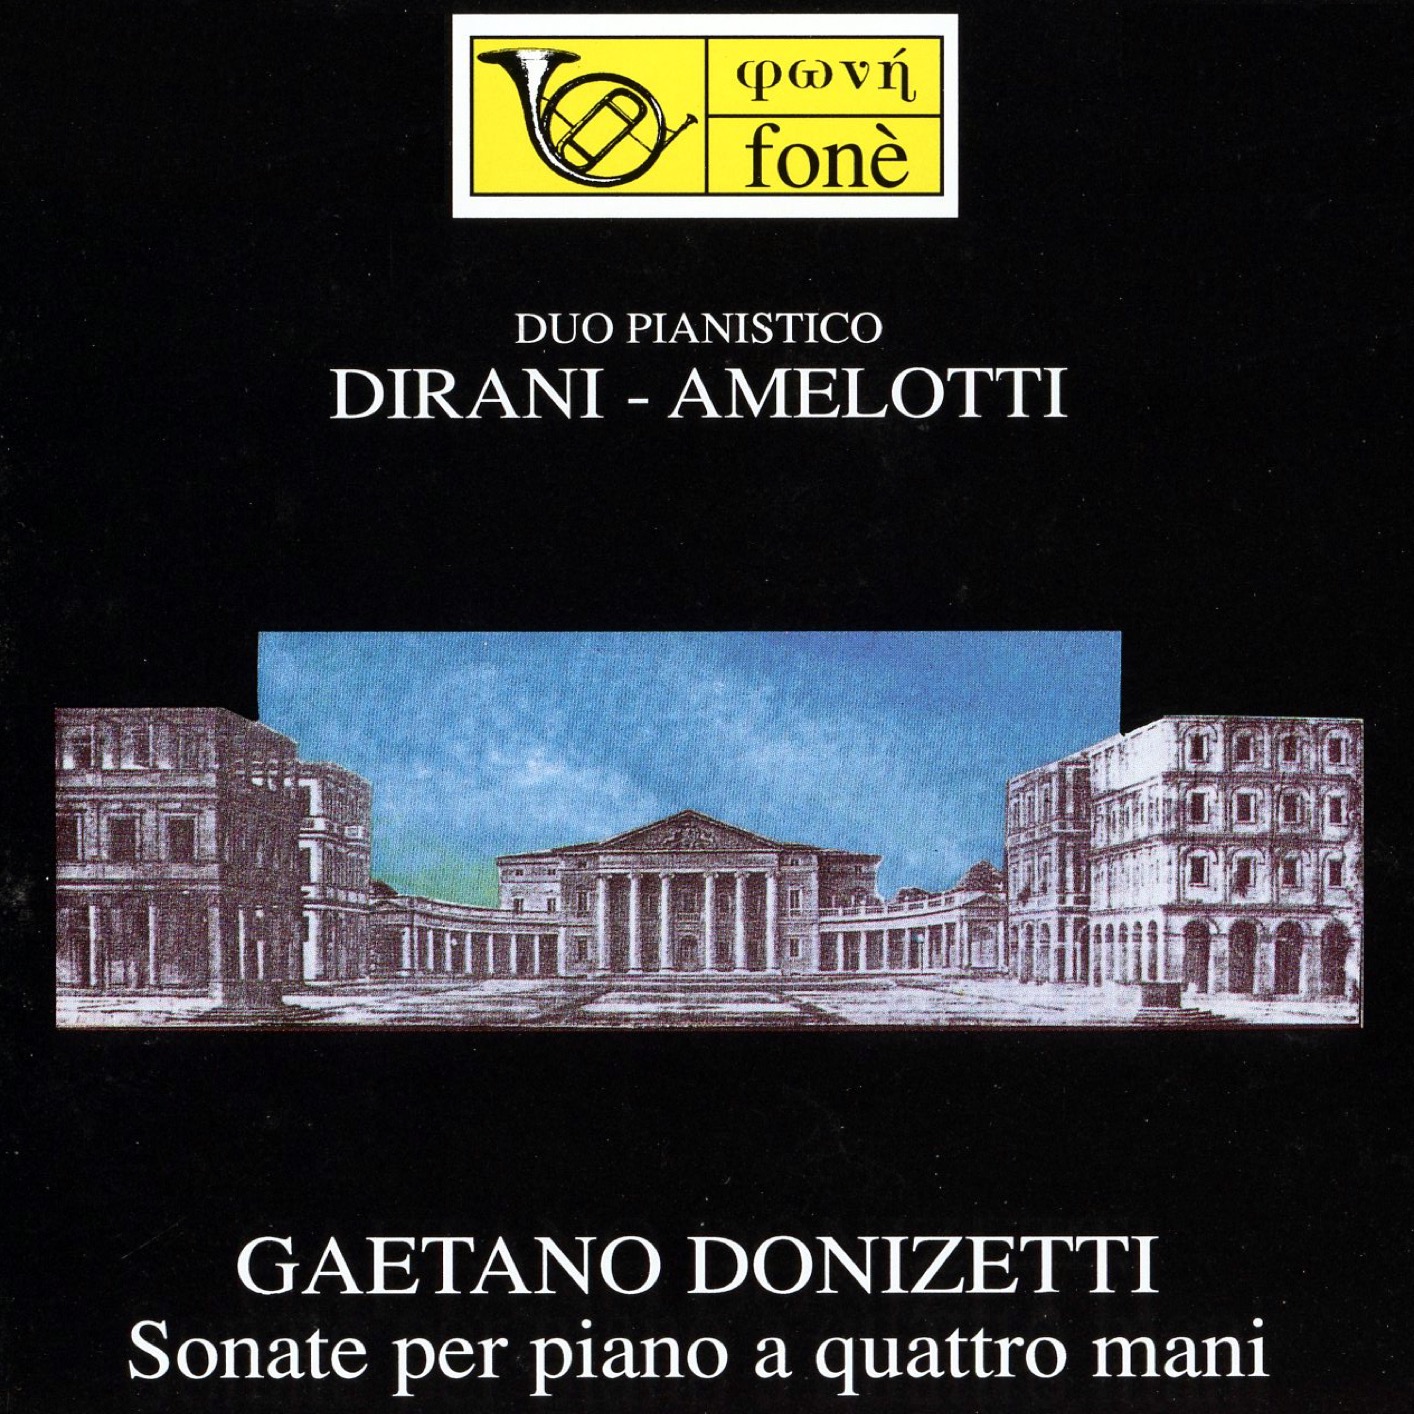 Paolo Dirani, Ferruccio Amelotti – Gaetano Donizetti – Sonate per piano a quattro mani (Remastered) (1991/2023) [FLAC 24bit/48kHz]